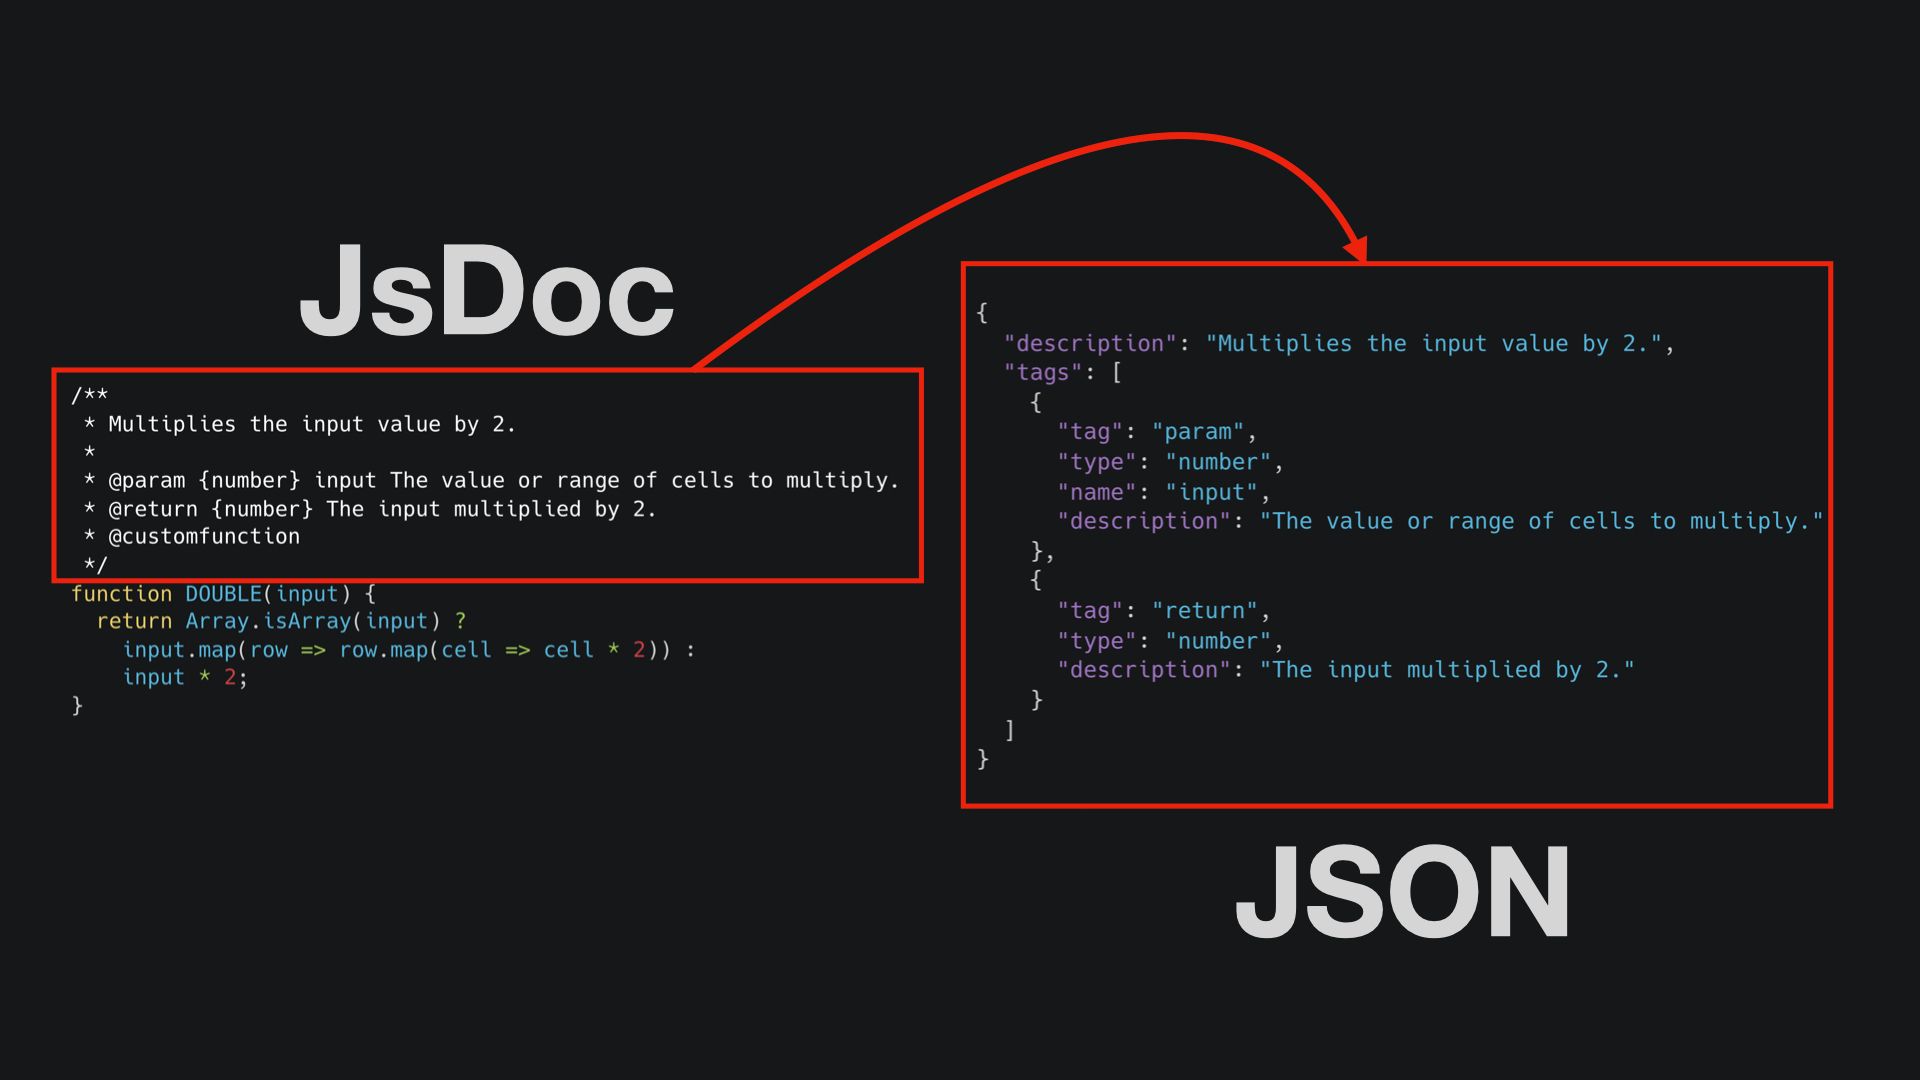 Convert JsDoc to JSON